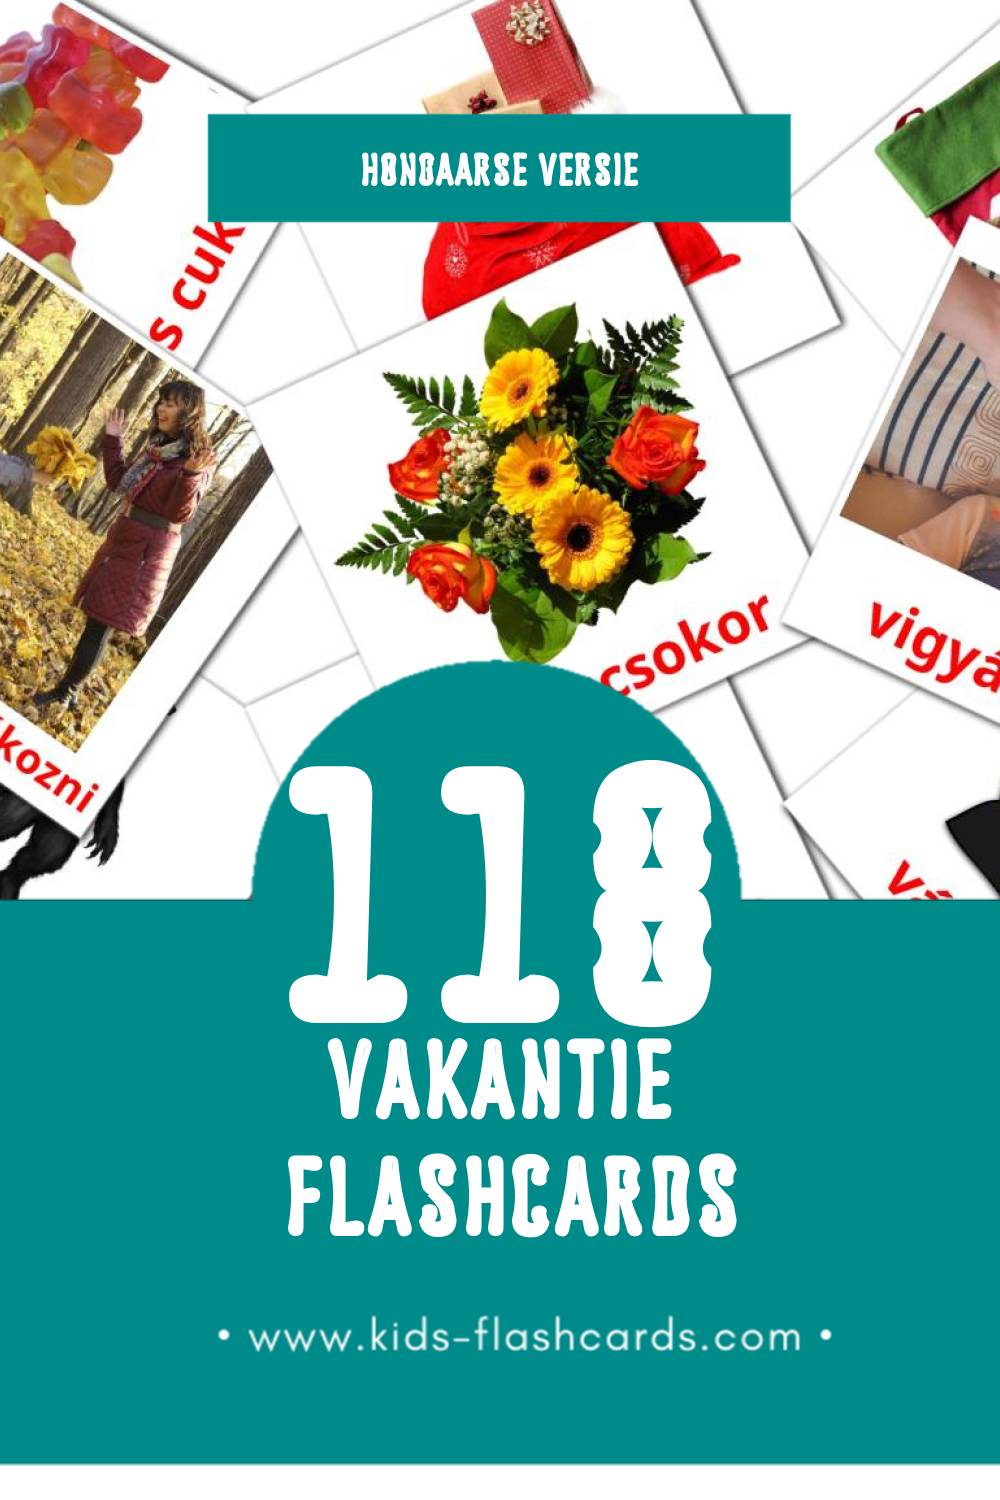 Visuele Ünnepek Flashcards voor Kleuters (118 kaarten in het Hongaars)